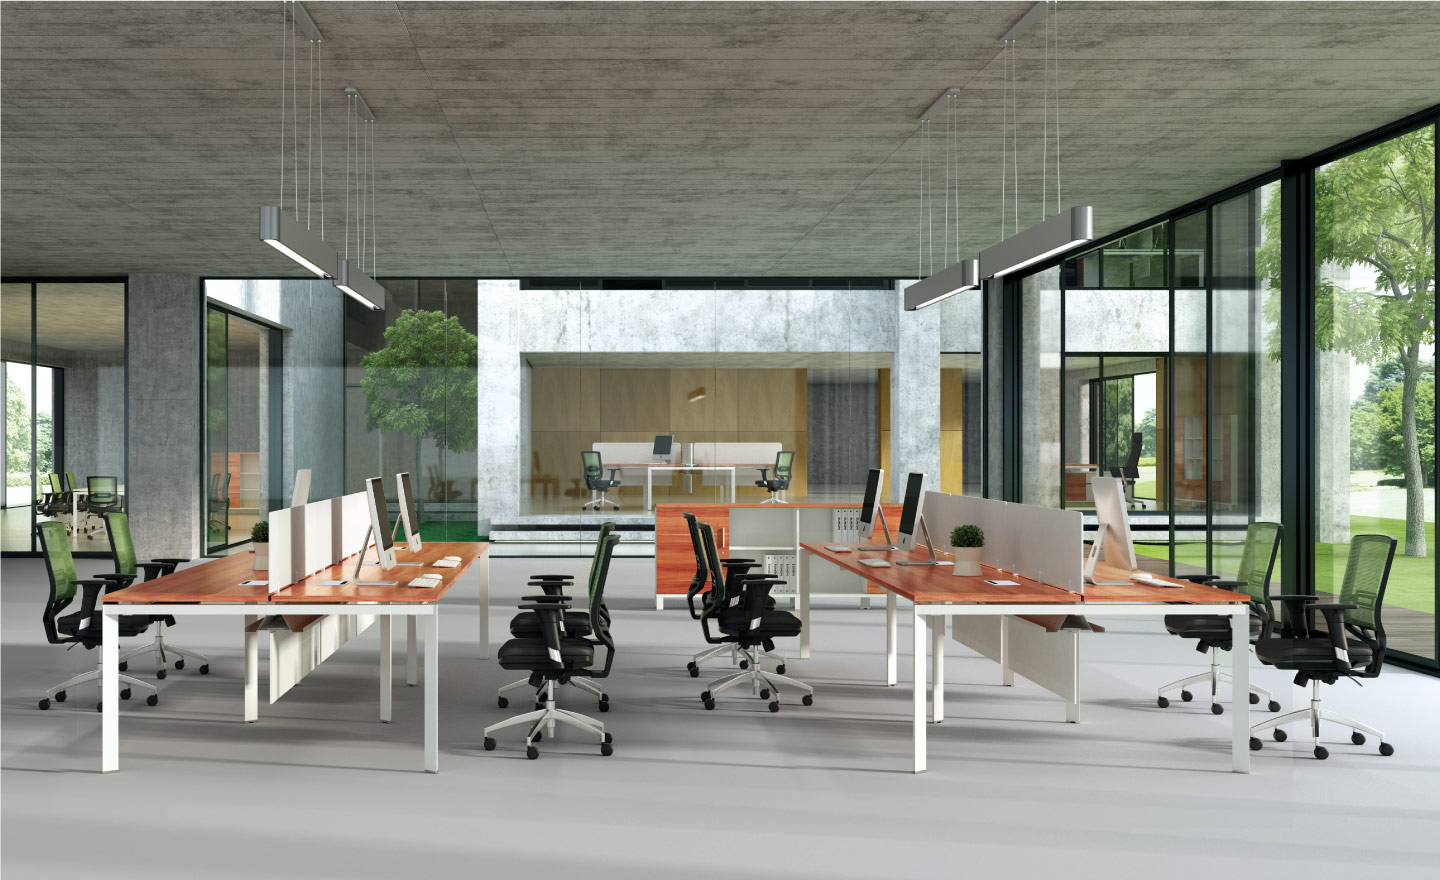 办公家具,办公空间,可塑性,可塑性办公空间,布局,办公室布局